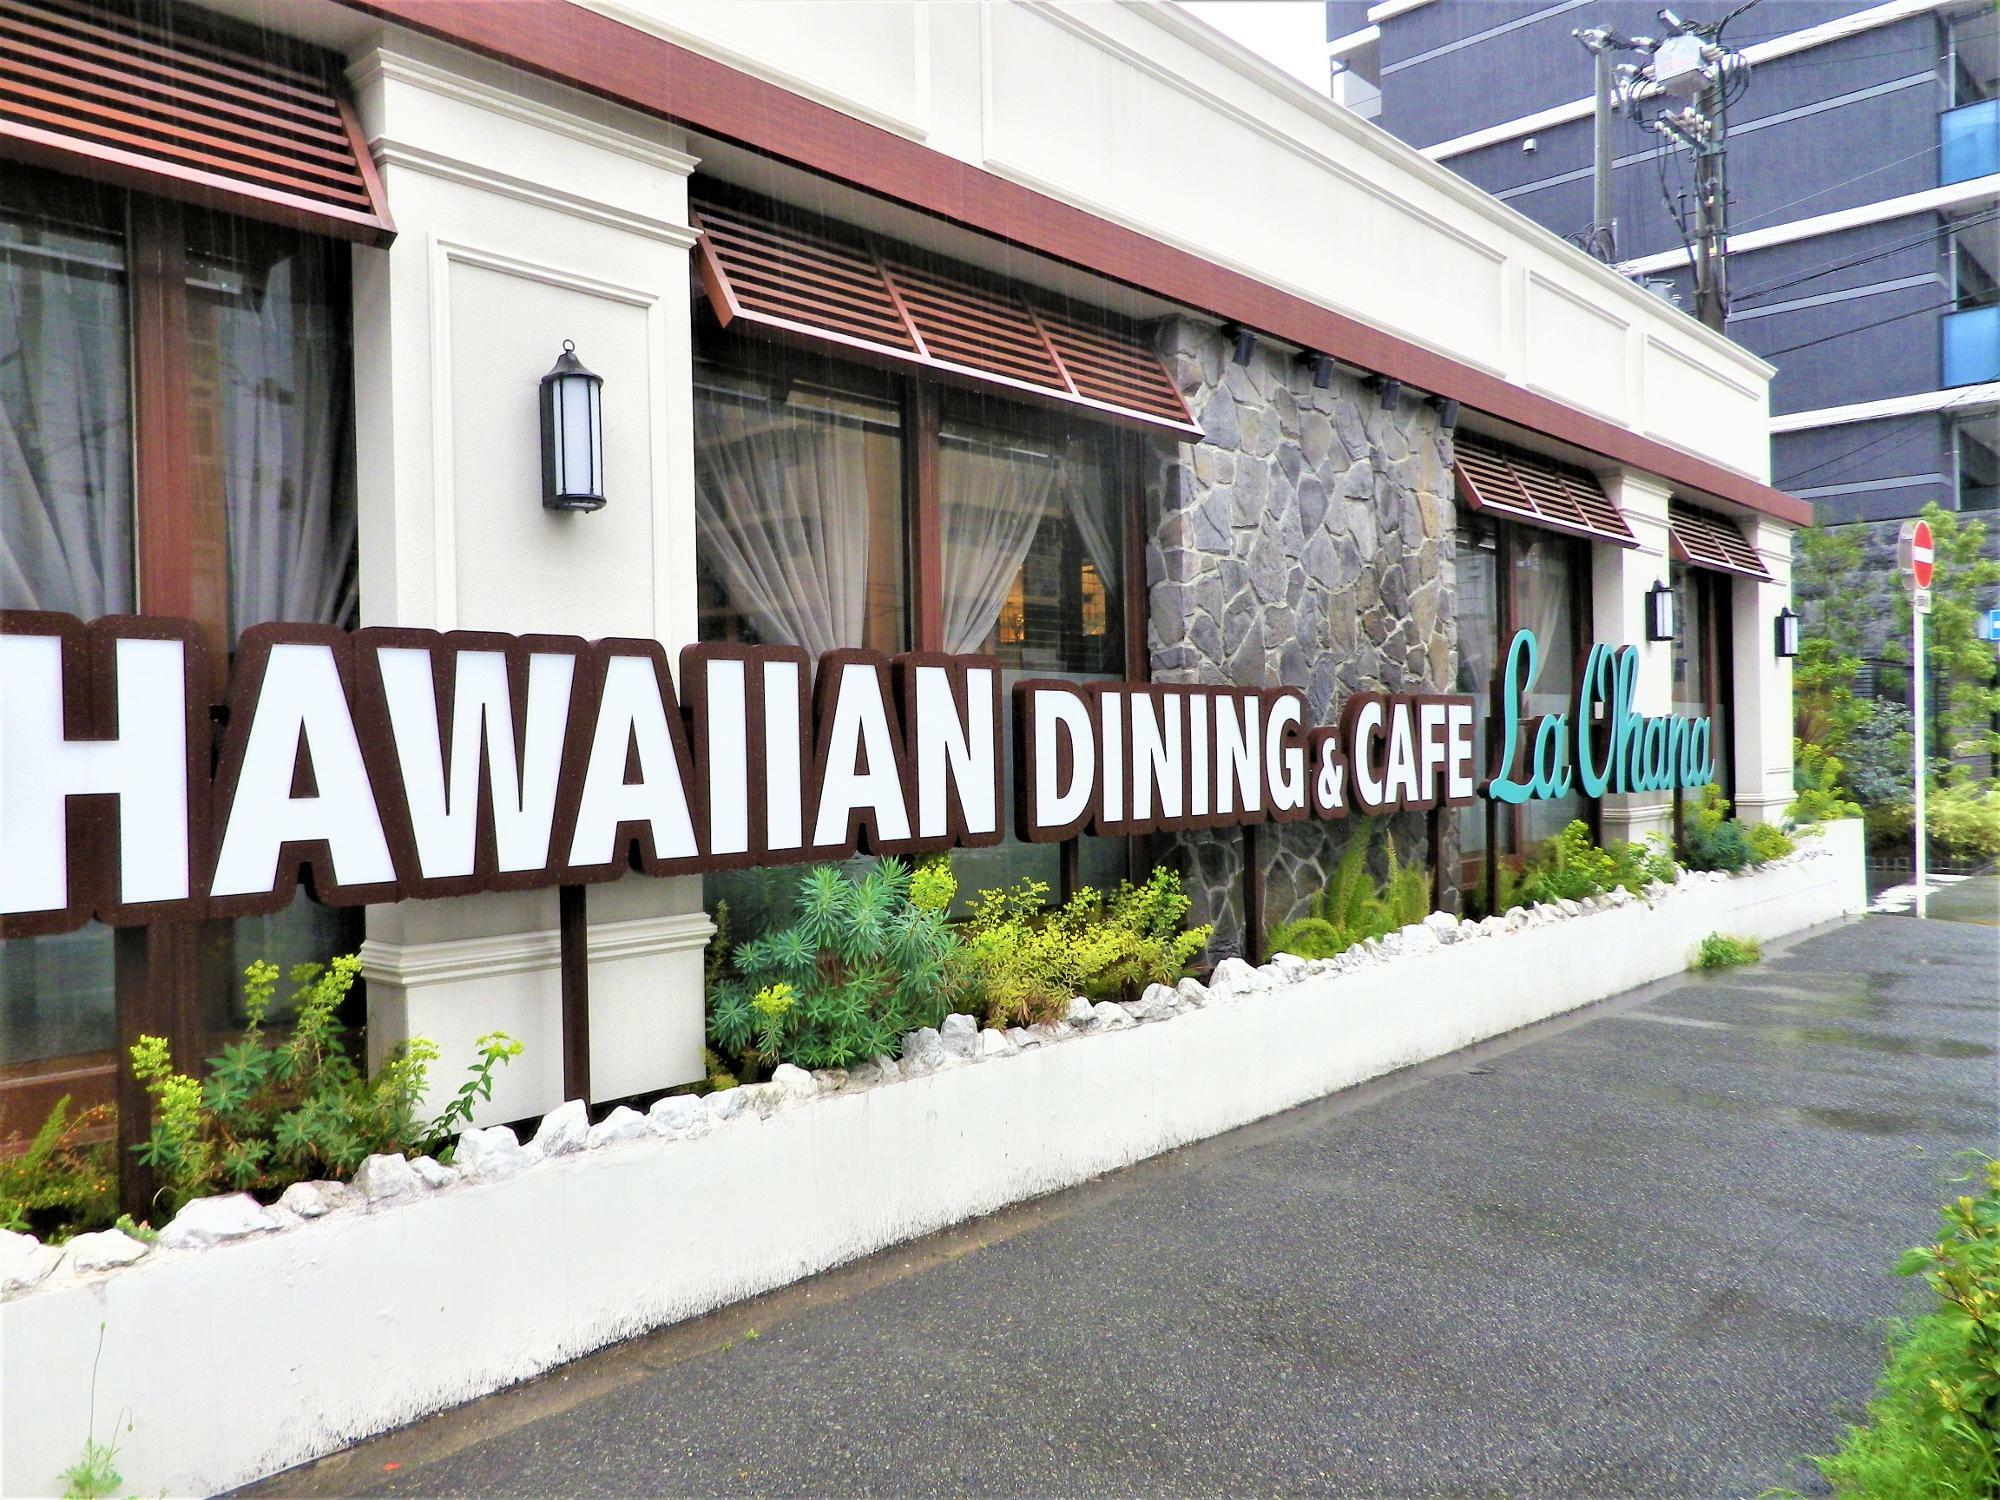 ハワイアンダイニング＆カフェ「ラ・オハナ」の英字ロゴが素敵。